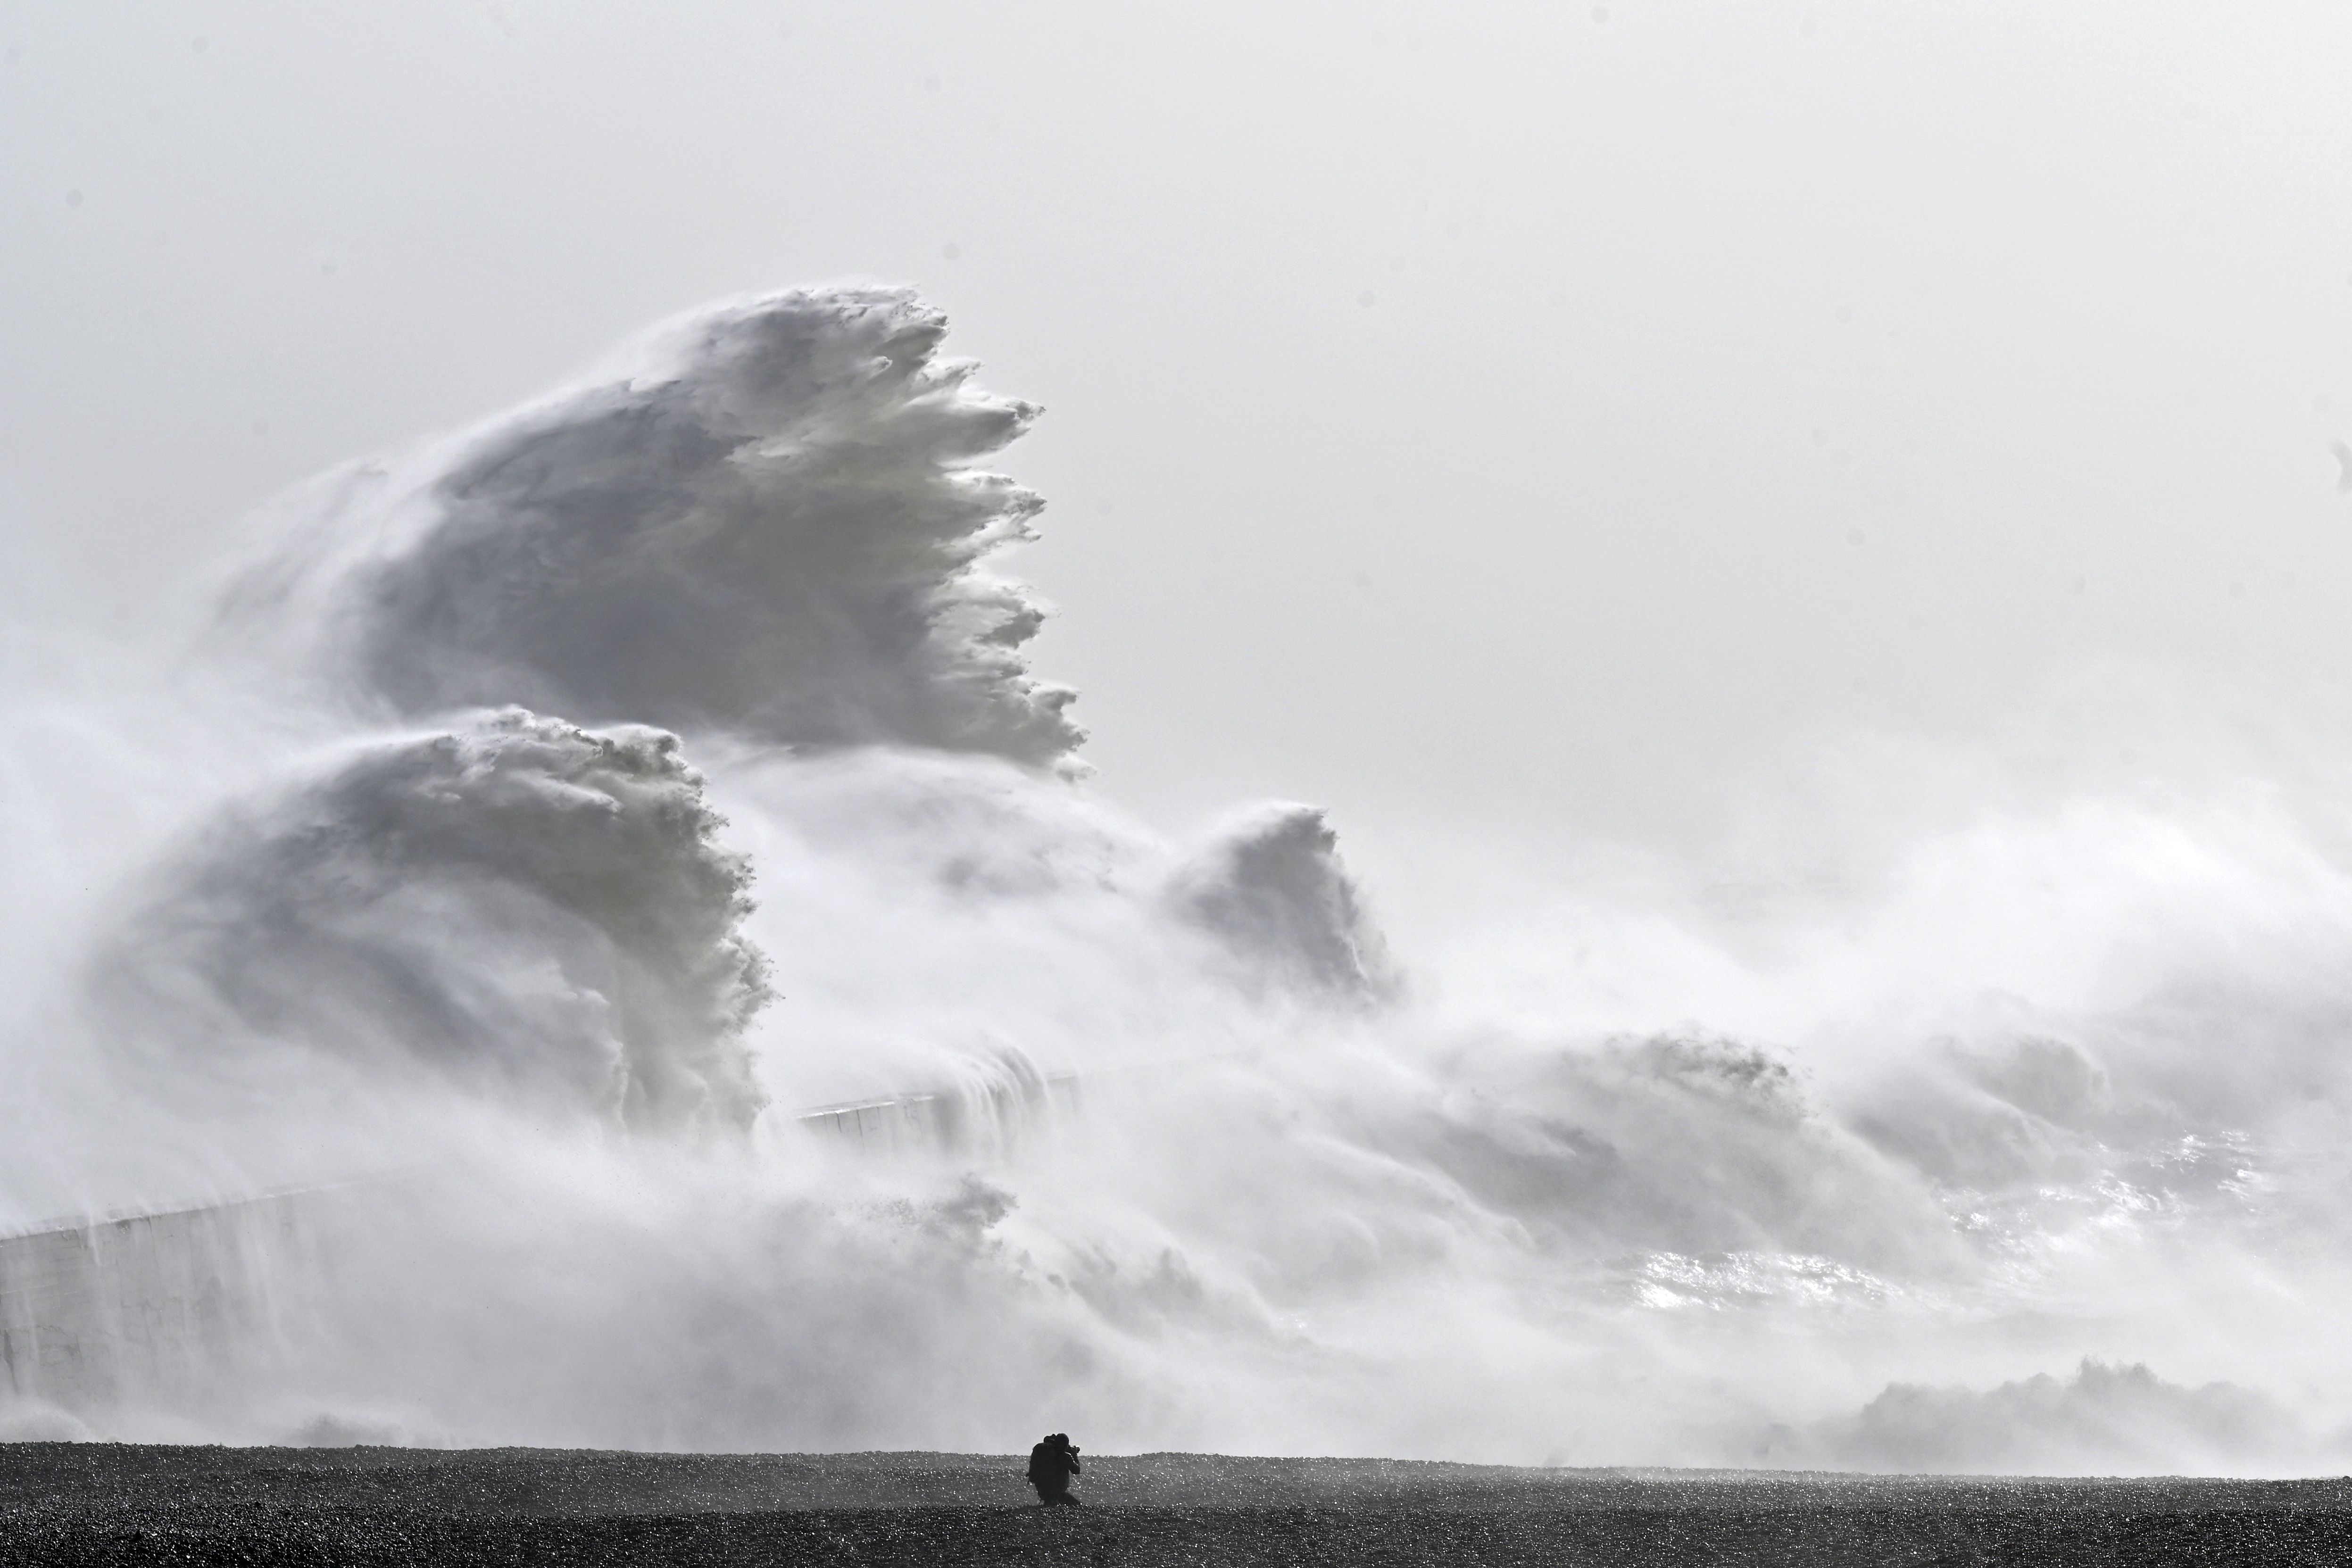 Le onde si sono schiantate sul muro del porto di Newhaven a Newhaven, nel sud dell'Inghilterra, il 2 febbraio.  18, quando la tempesta Eunice ha portato forti venti in tutto il paese.  Potenti tempeste come questa stanno diventando sempre più frequenti a causa del cambiamento climatico indotto dall'uomo.